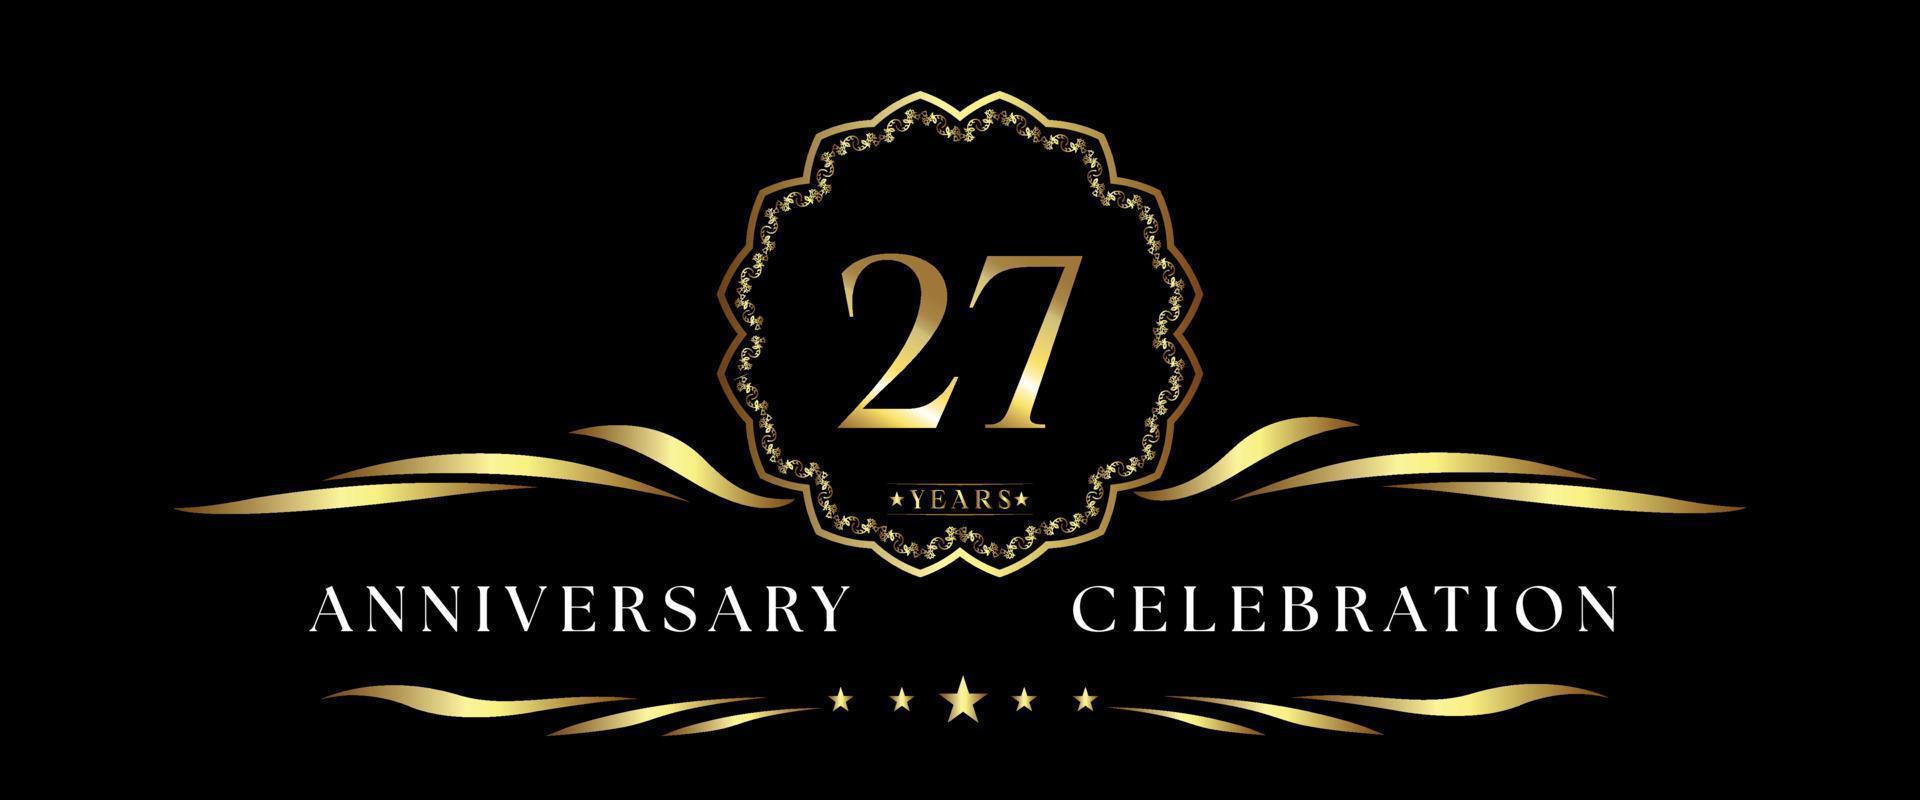 Celebración del aniversario de 27 años con marco decorativo dorado aislado en fondo negro. diseño vectorial para tarjetas de felicitación, fiesta de cumpleaños, boda, fiesta de eventos, ceremonia. Logotipo de aniversario de 27 años. vector